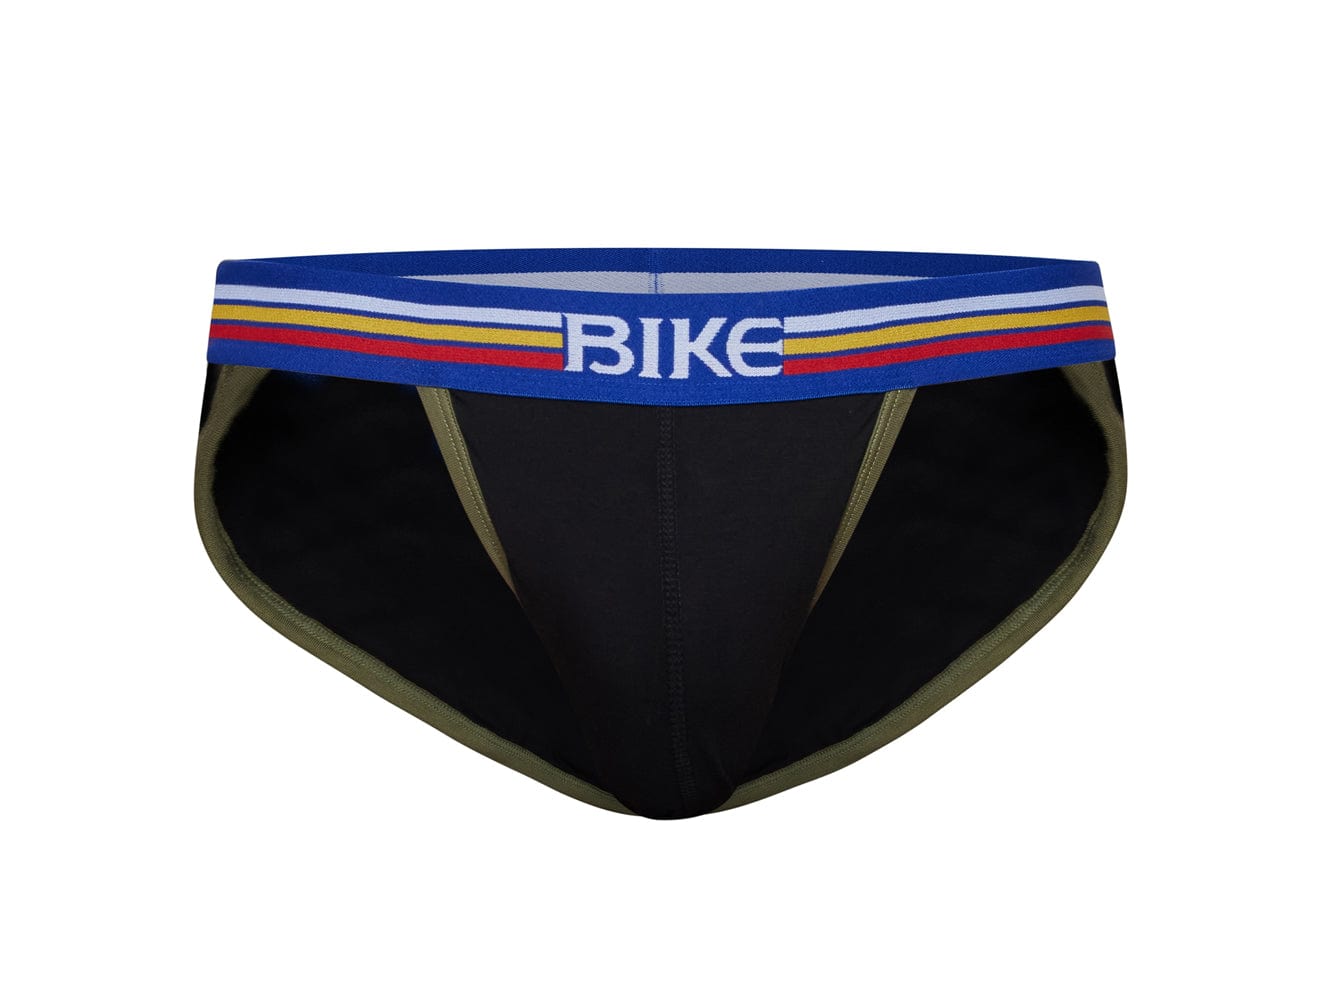 Bike Athletic Compression Underwear - Black - underU4men